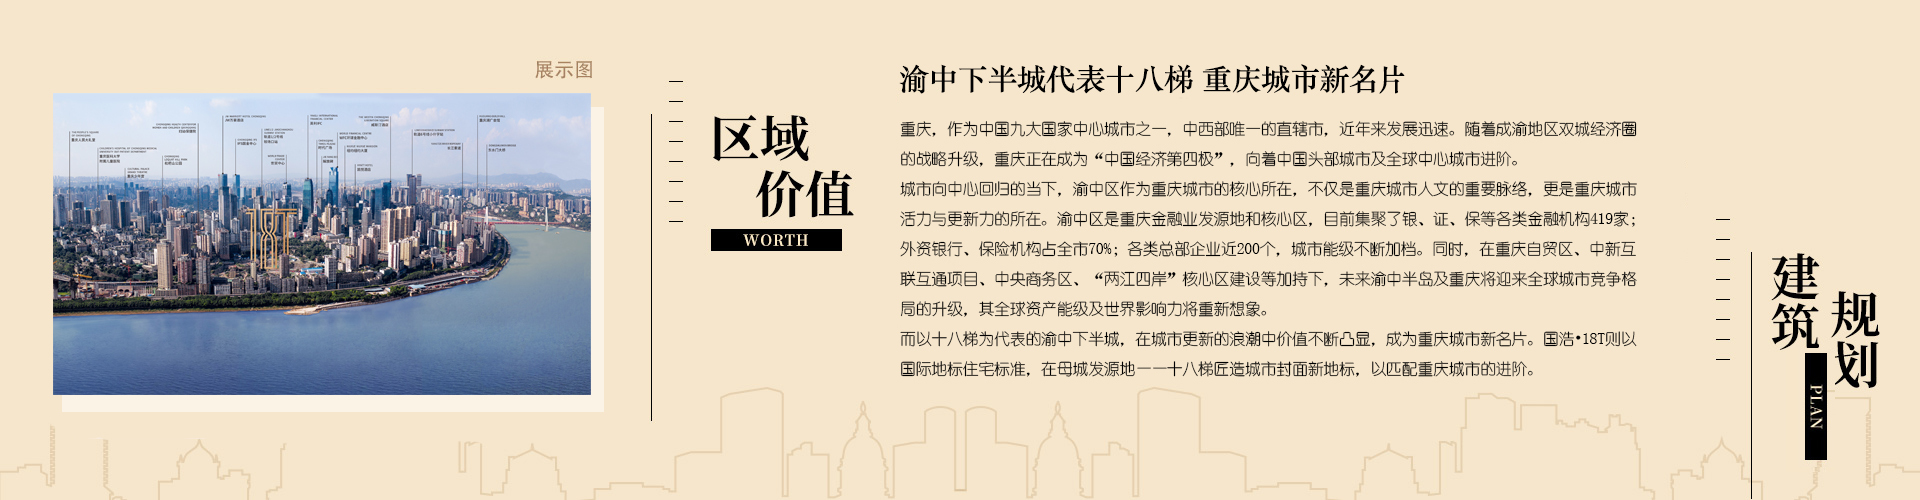 【测评报告】国浩·18T成为重庆渝中区核心地块新地标